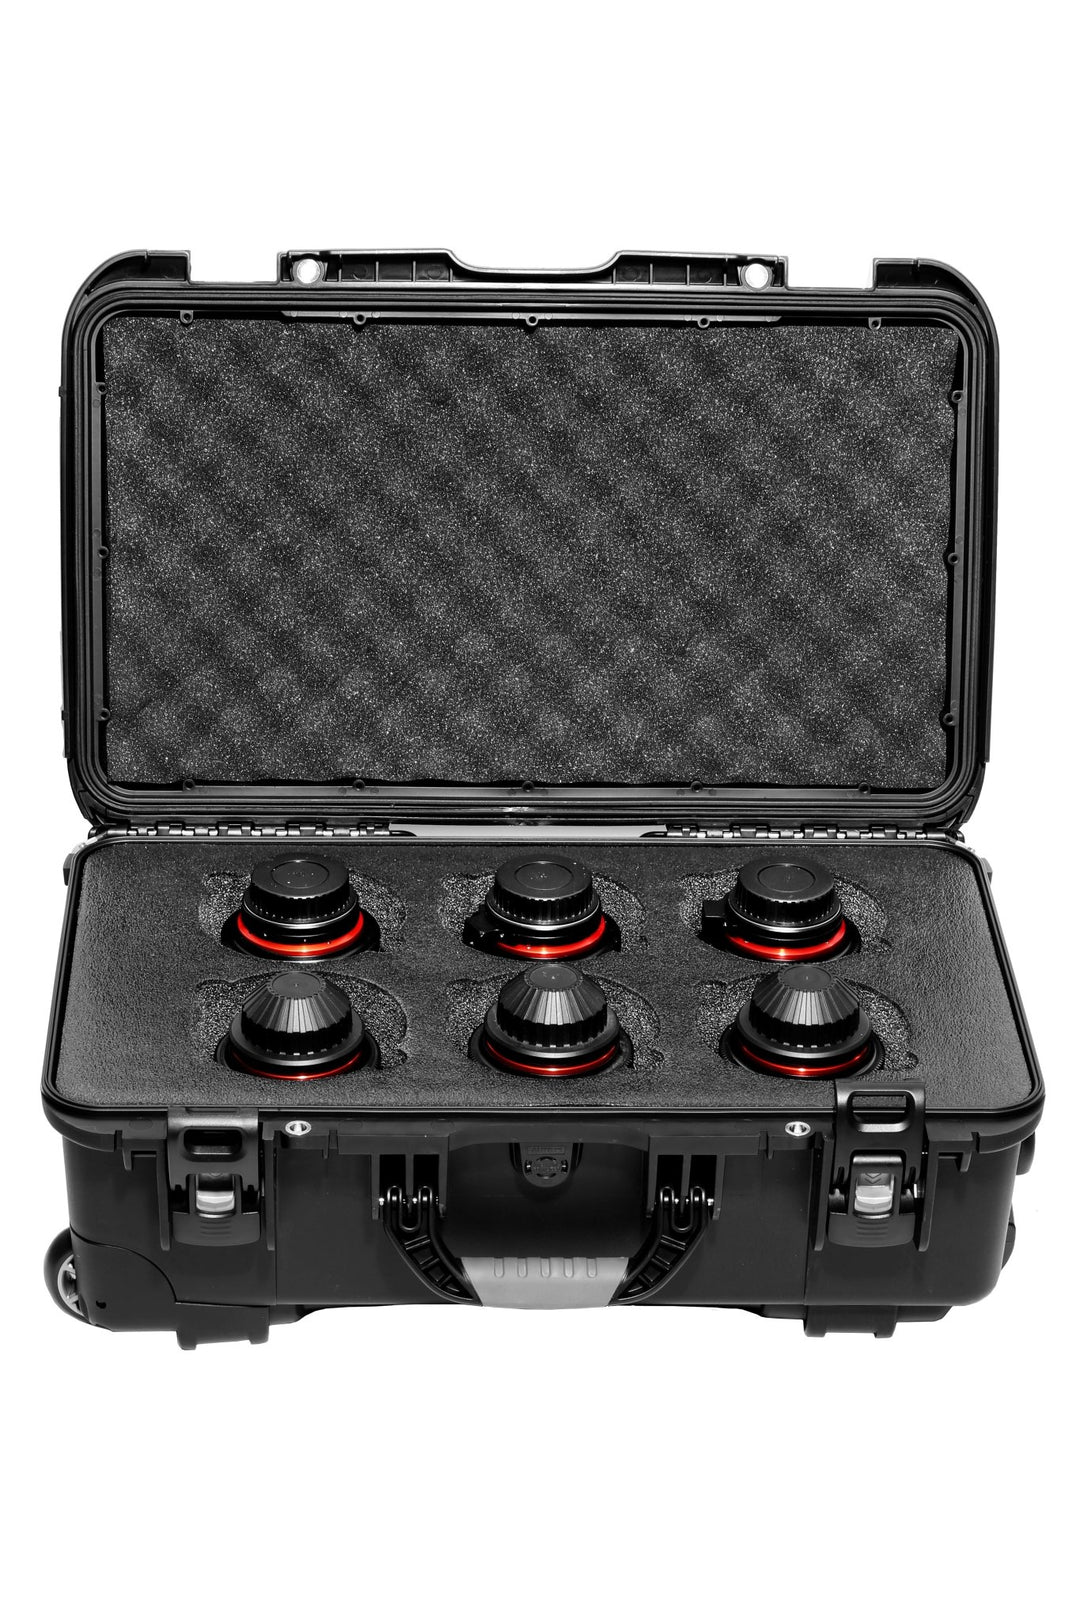 XEEN CF 6 Lens Carry-on Case - Rokinon